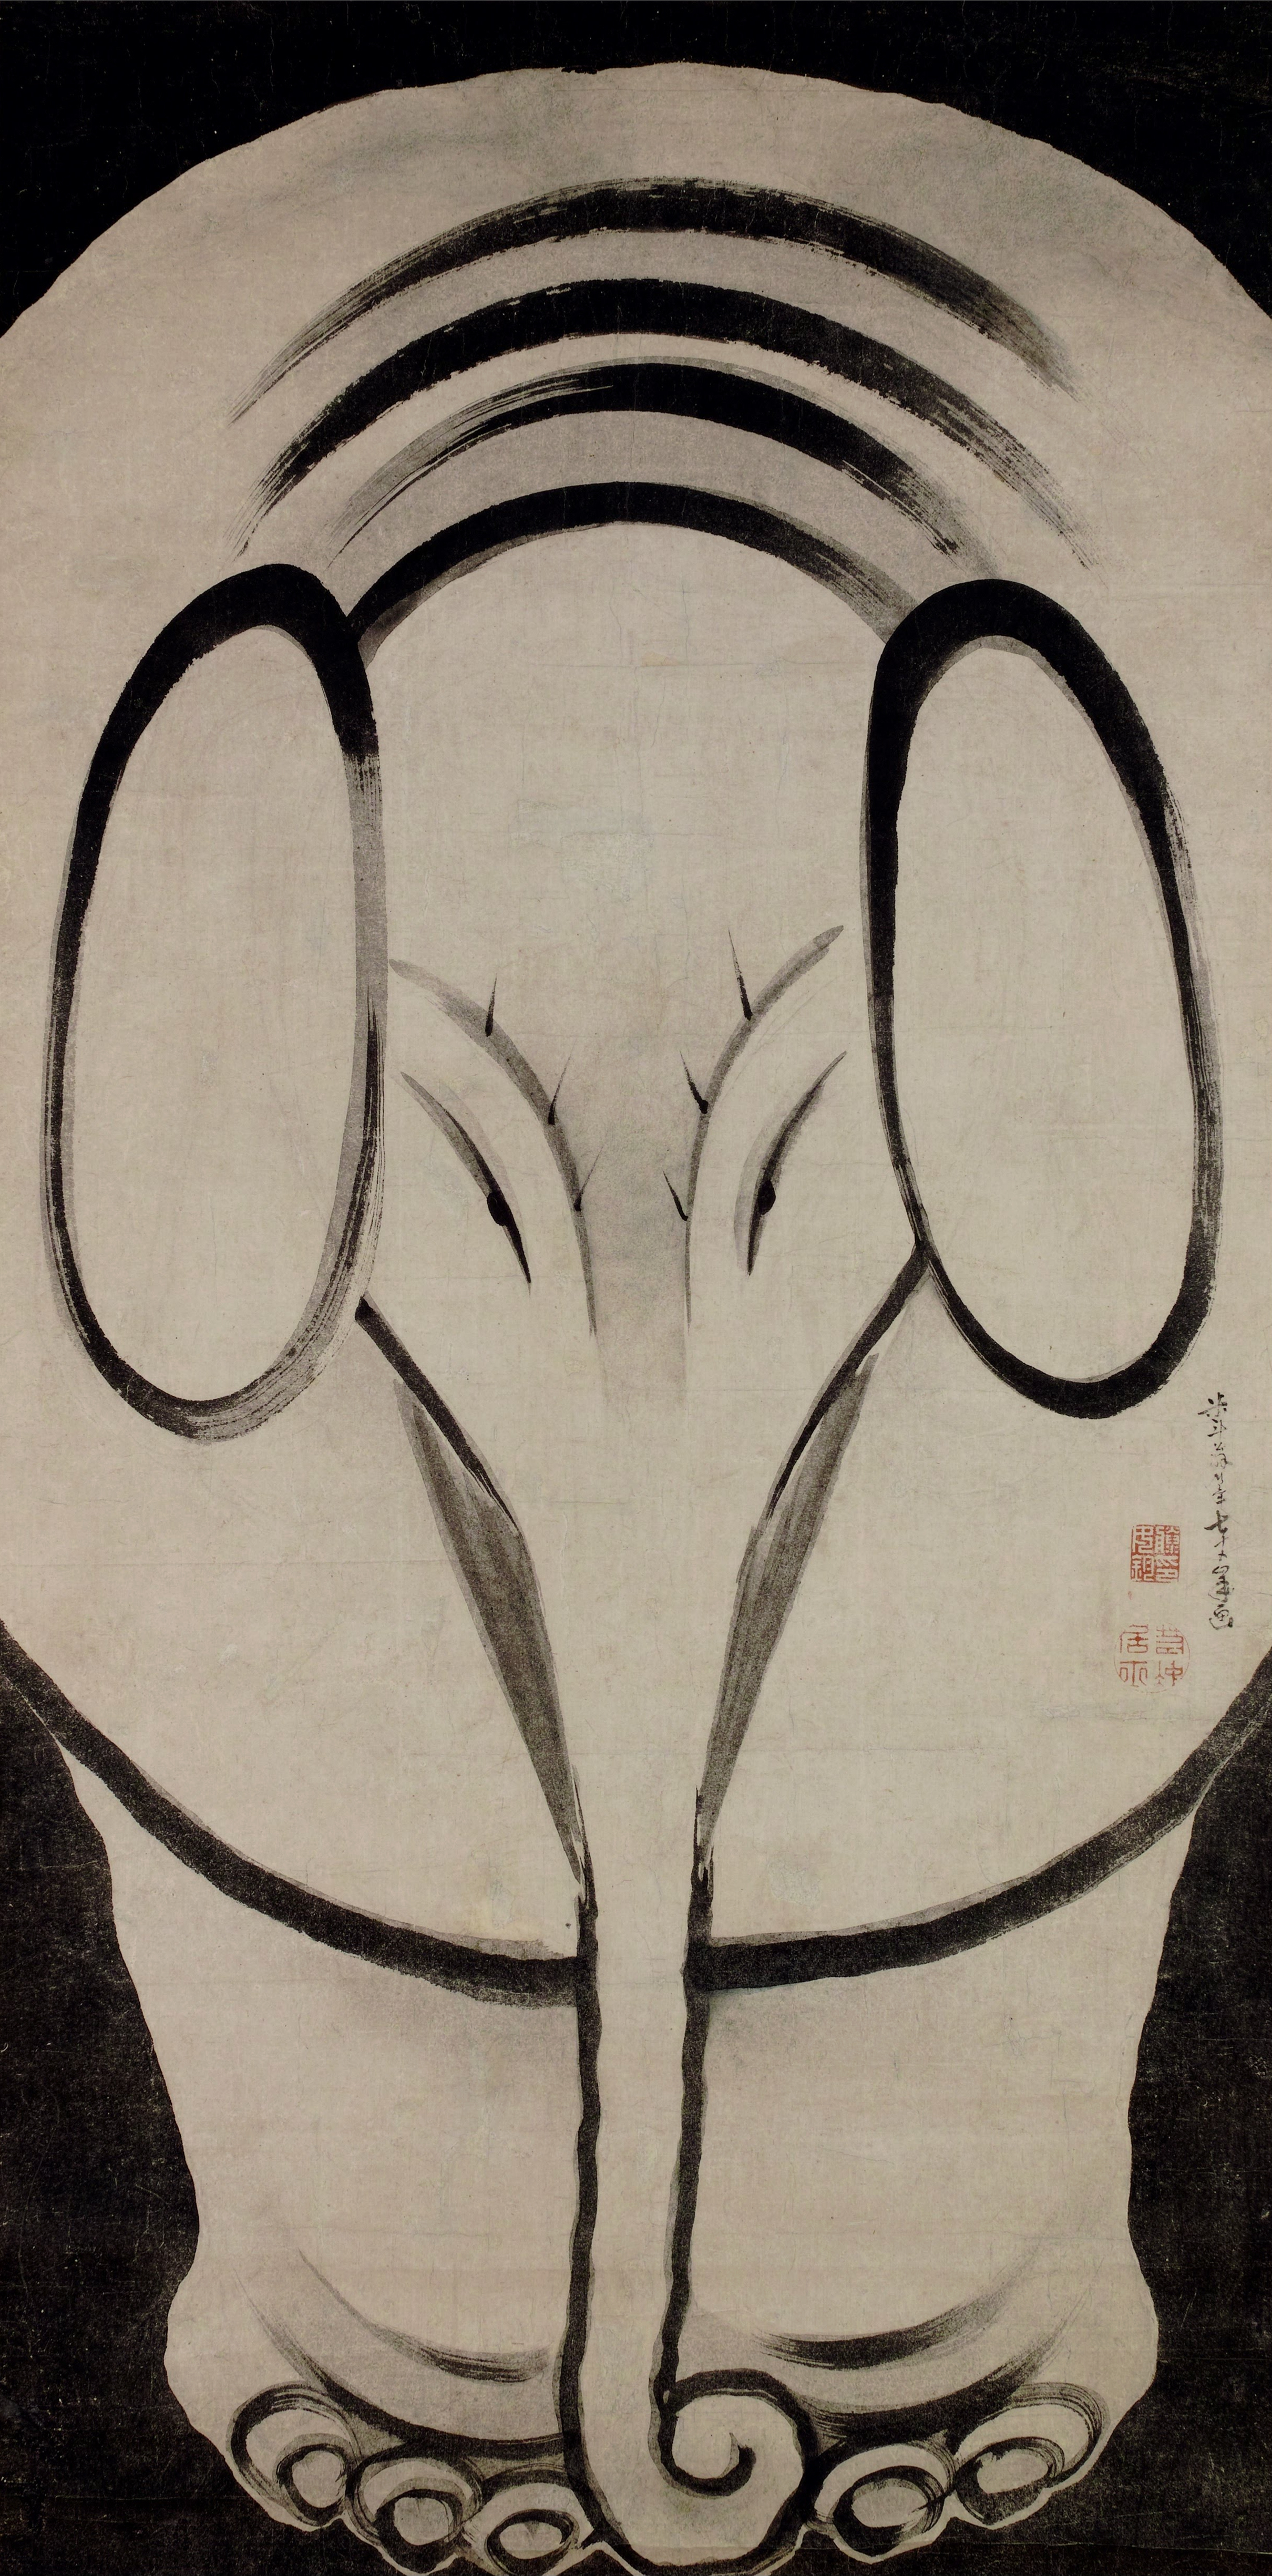 Slon by Itō Jakuchū - 1790 - 155,5 cm × 77,3cm 